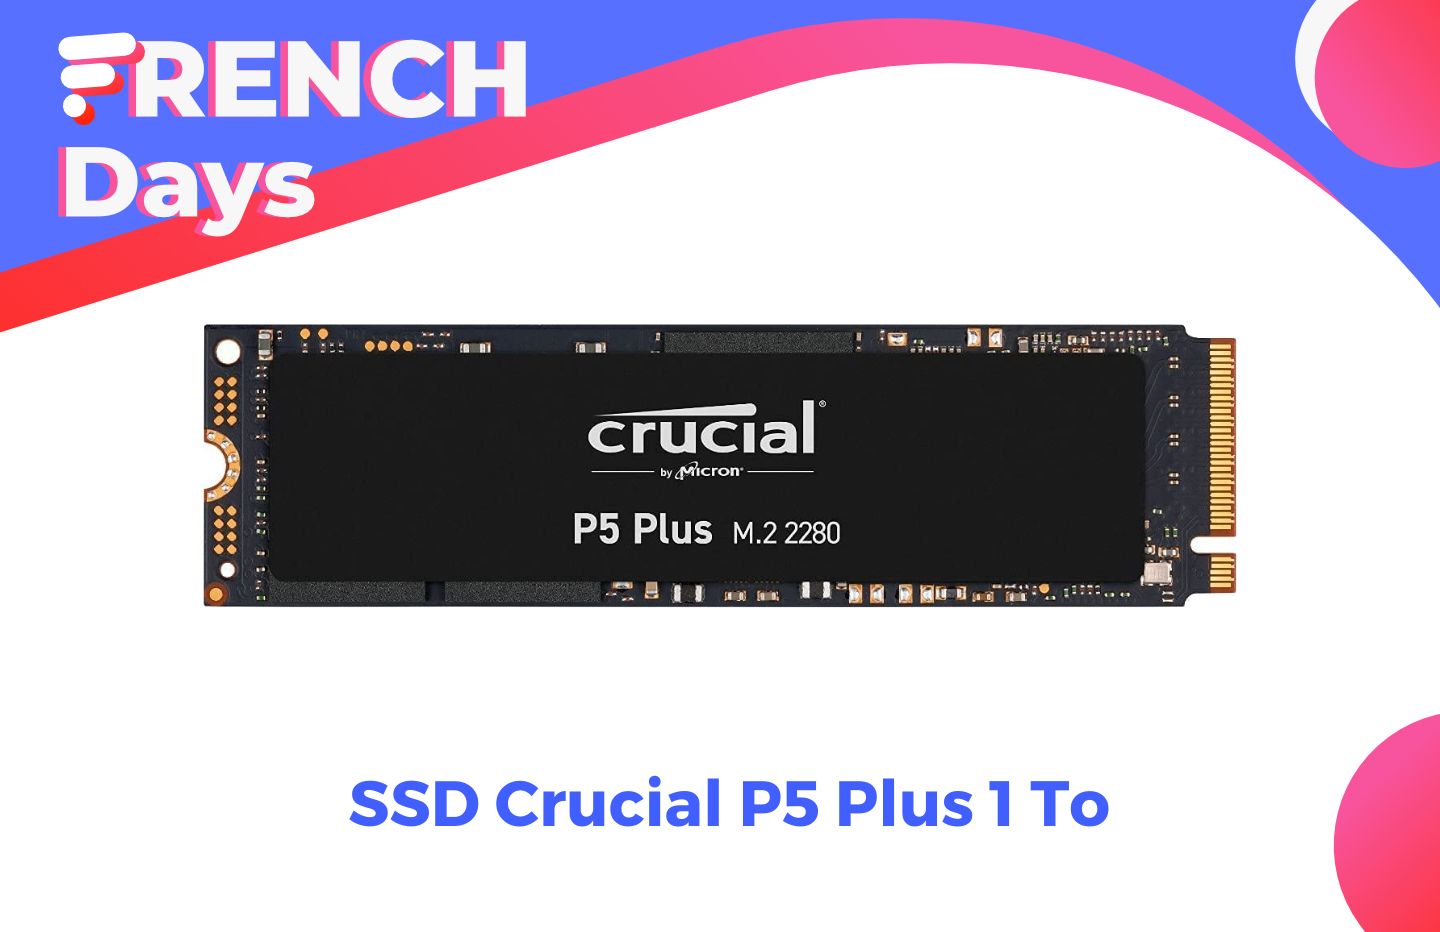 French Days : Les SSD pour PS5 en promotion jusqu'à minuit